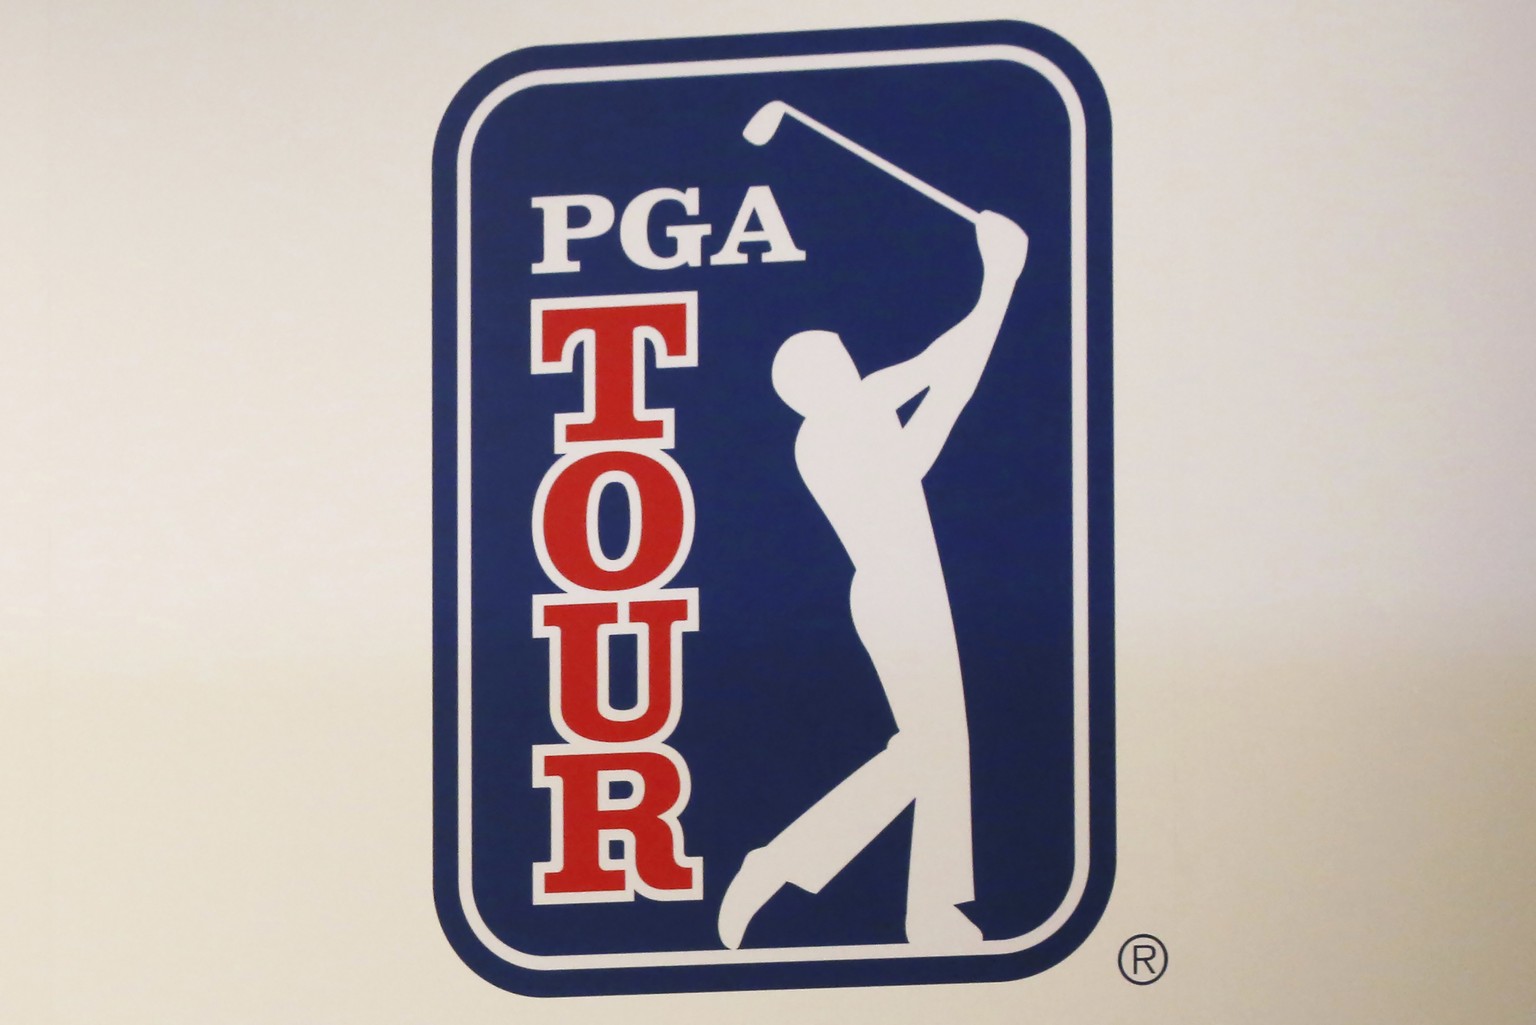 Golf-Sport PGA Tour und Saudi-Konkurrenz LIV fusionieren überraschend